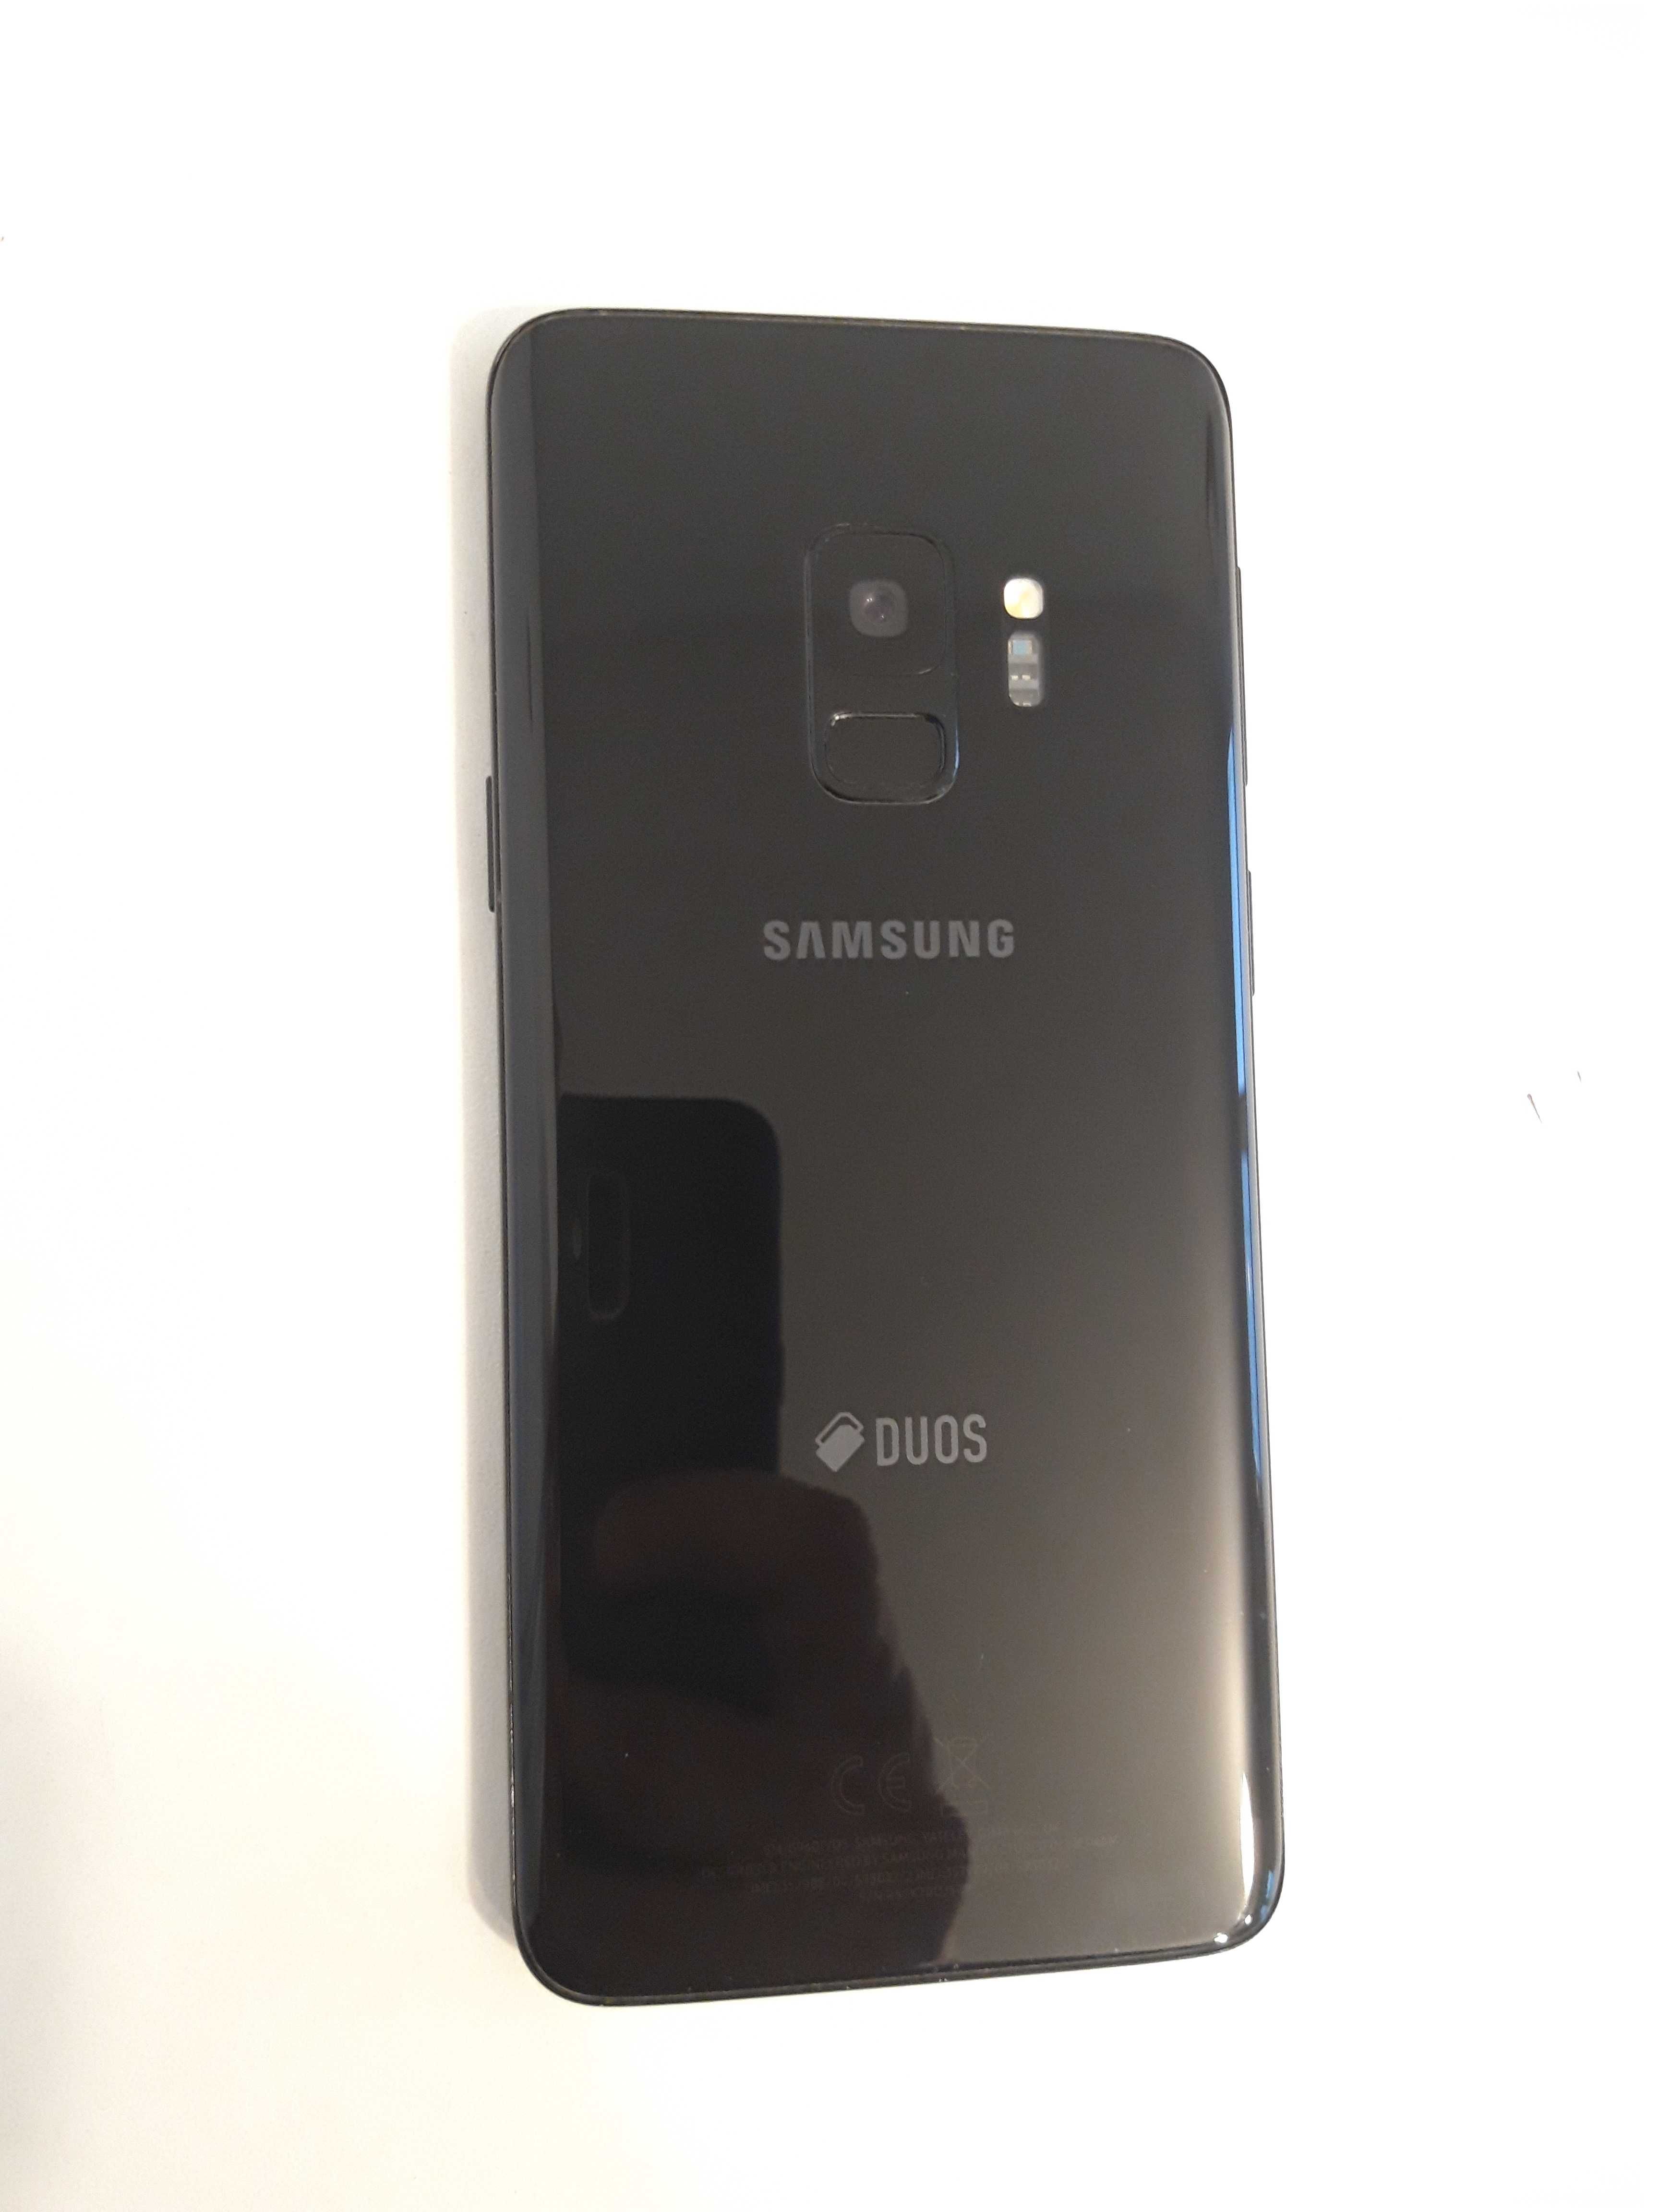 Samsung Galaxy S9 G960F